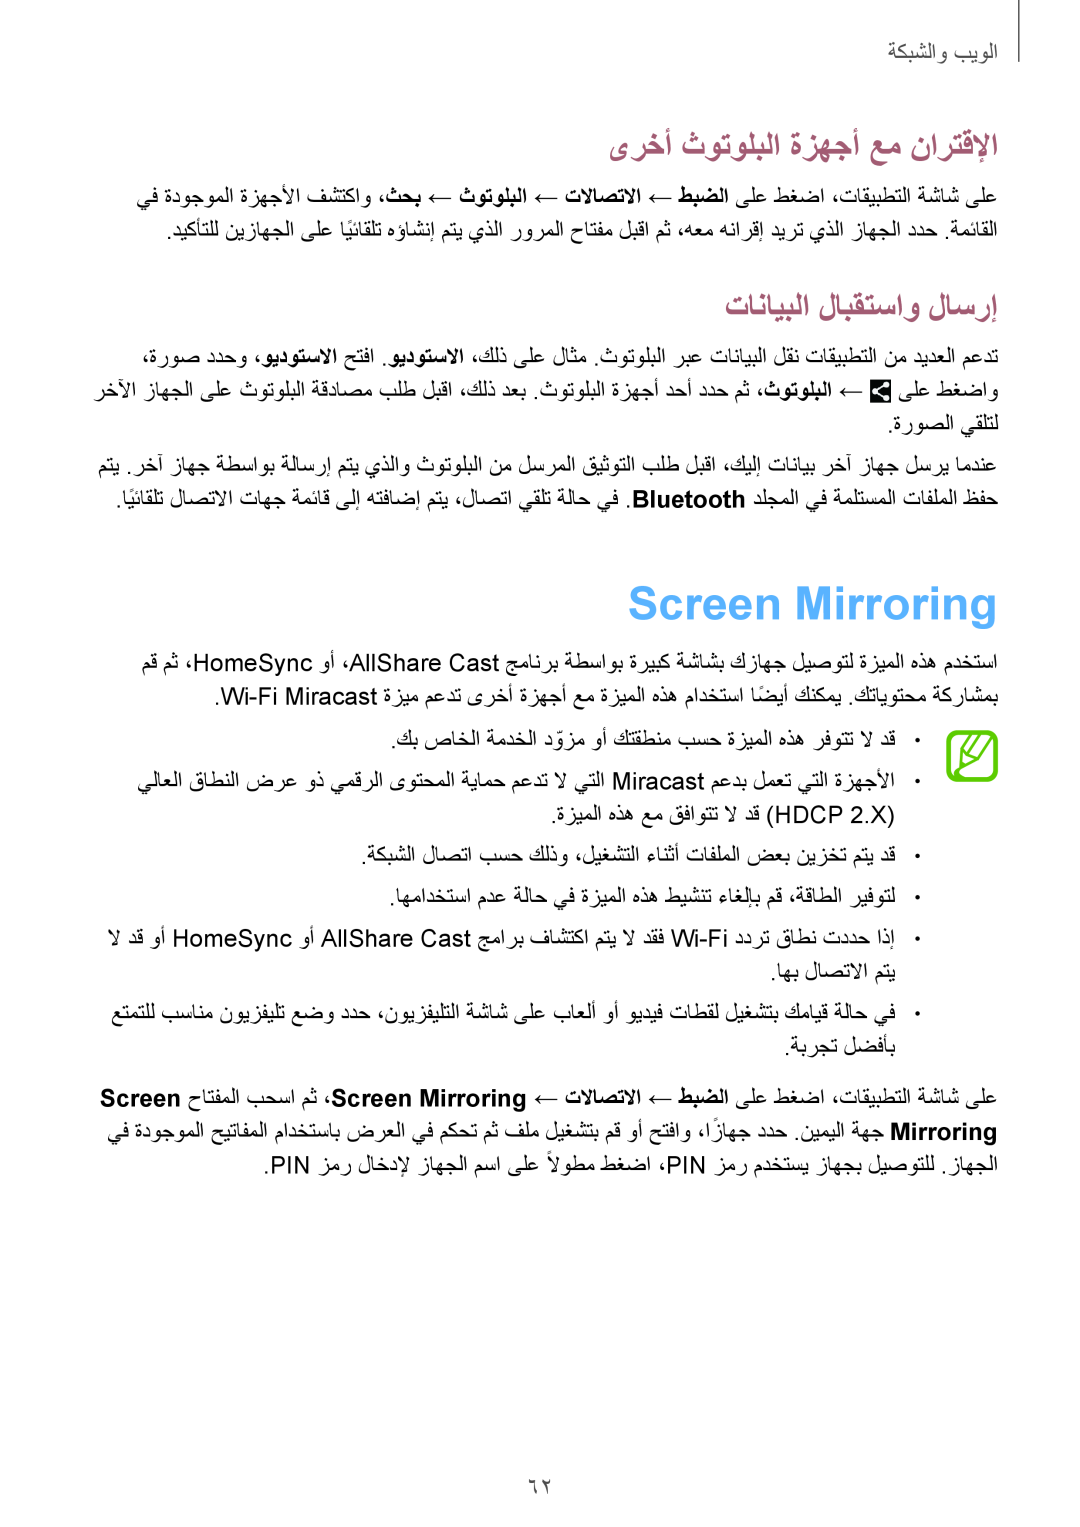 Samsung SM-T320NZWAEGY manual Screen Mirroring, ىرخأ ثوتولبلا ةزهجأ عم نارتقلإا, تانايبلا لابقتساو لاسرإ, الويٜوالشٜ䌆 